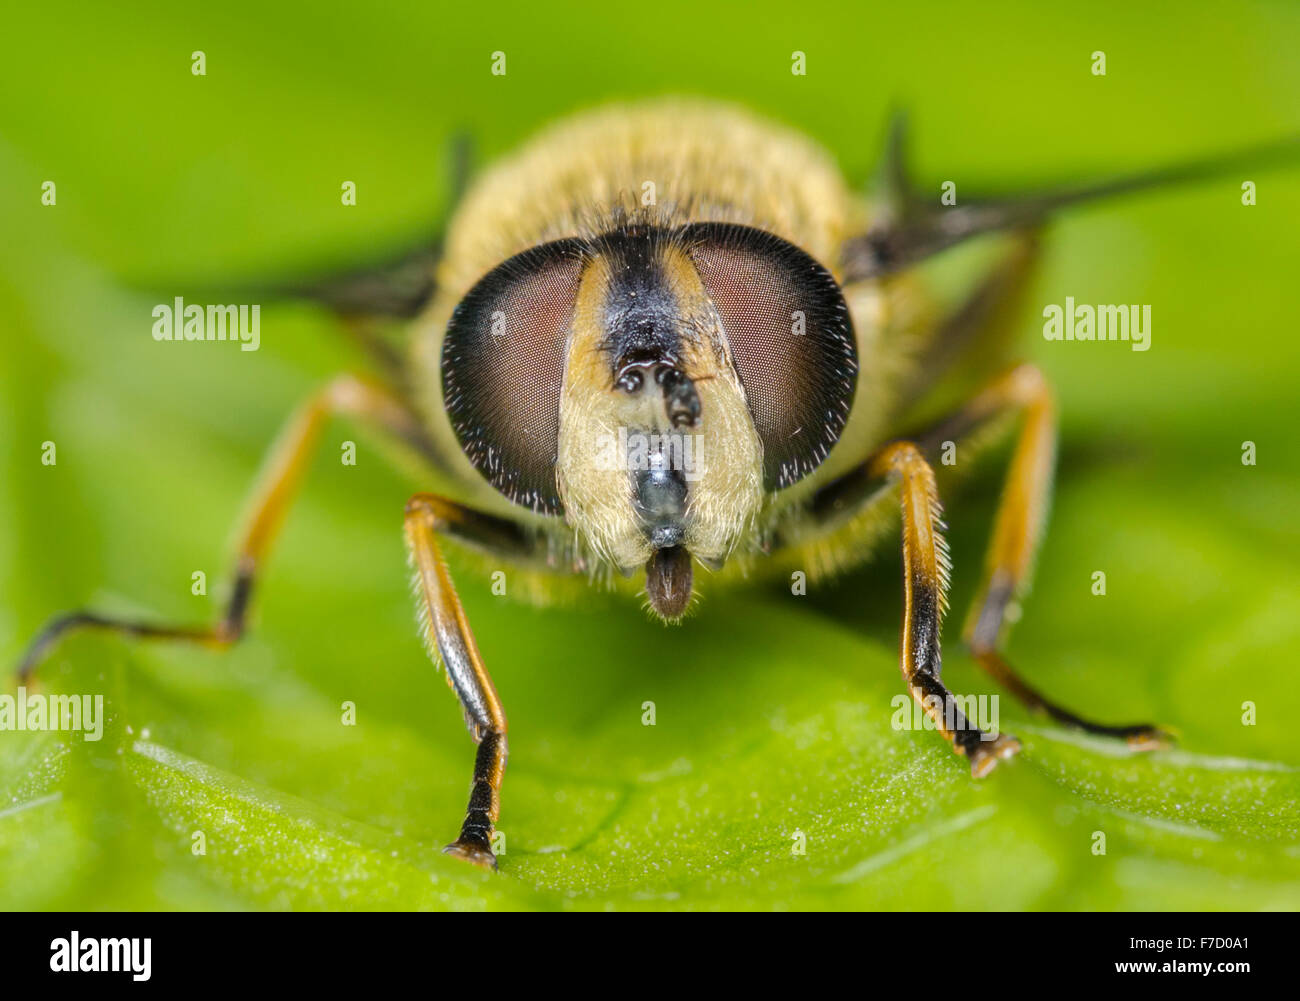 Myathropa Florea Hoverfly (femelle) sur une feuille à la recherche à l'appareil photo, au Royaume-Uni. Banque D'Images